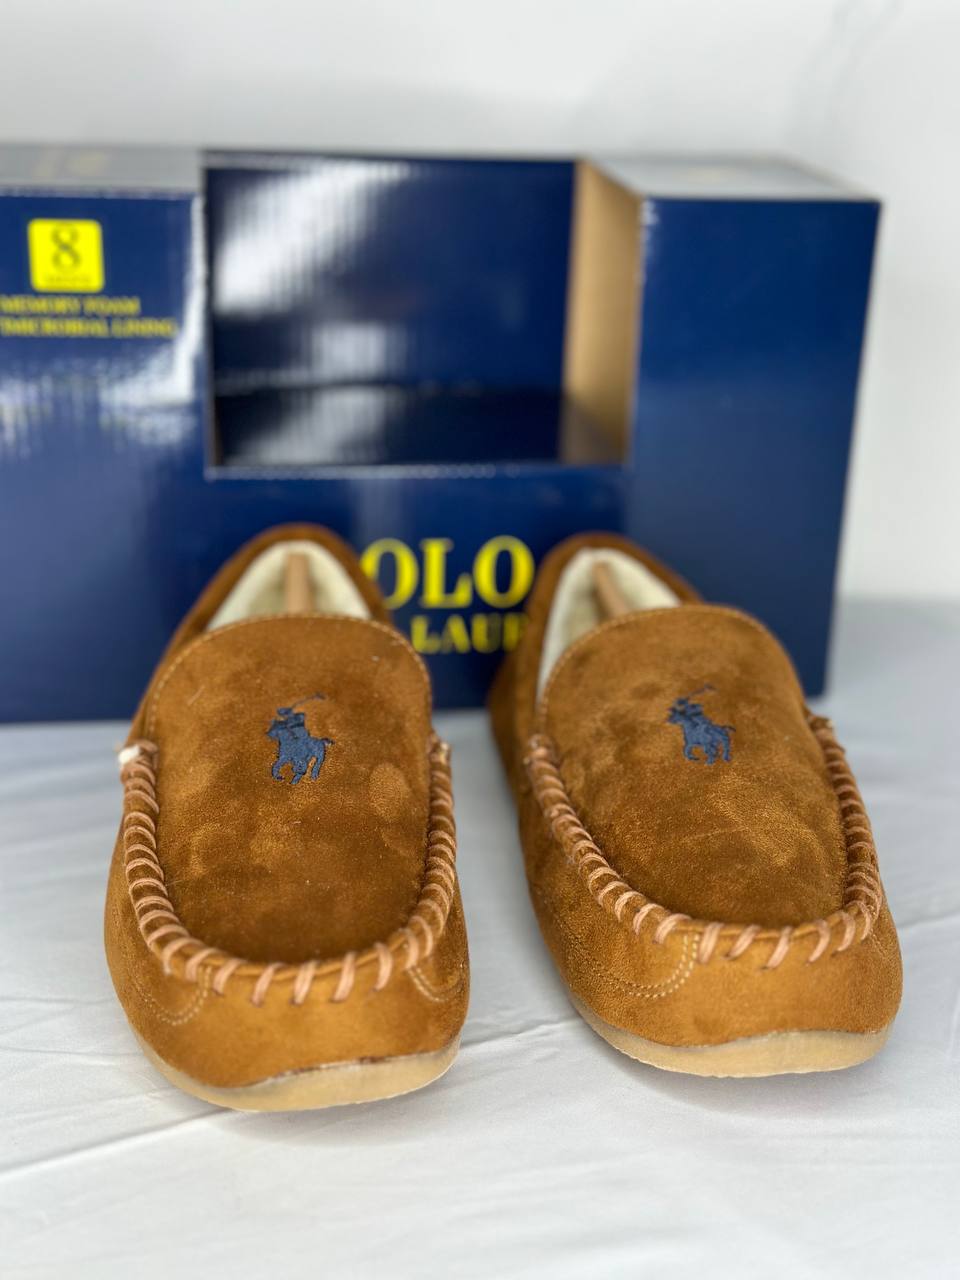 Ralph Lauren polo shoes